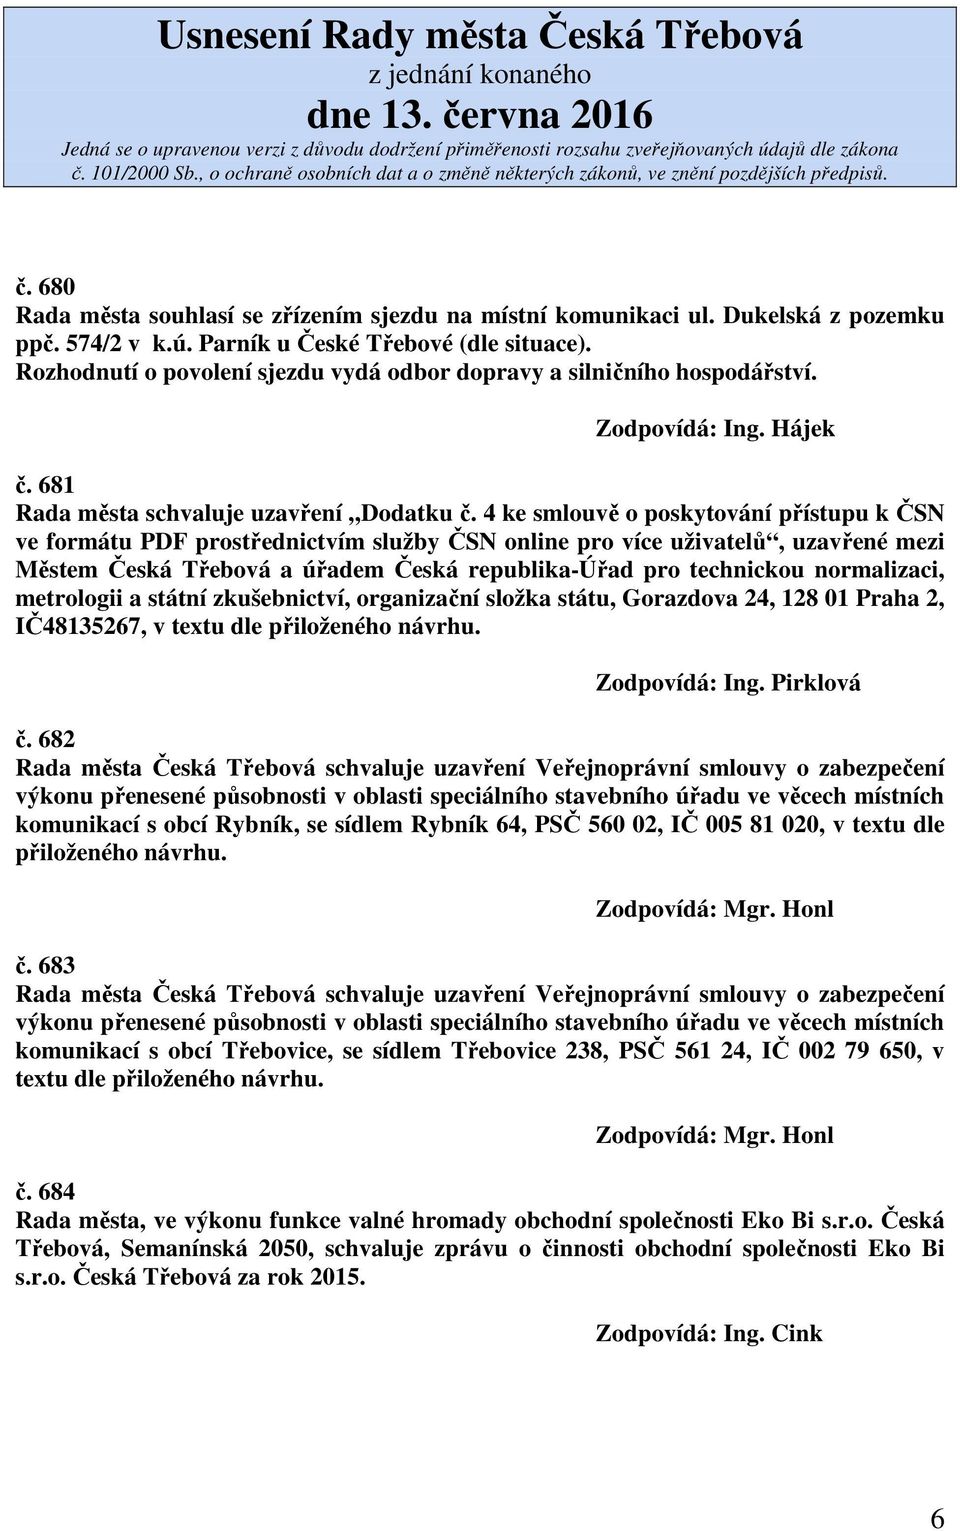 4 ke smlouvě o poskytování přístupu k ČSN ve formátu PDF prostřednictvím služby ČSN online pro více uživatelů, uzavřené mezi Městem Česká Třebová a úřadem Česká republika-úřad pro technickou